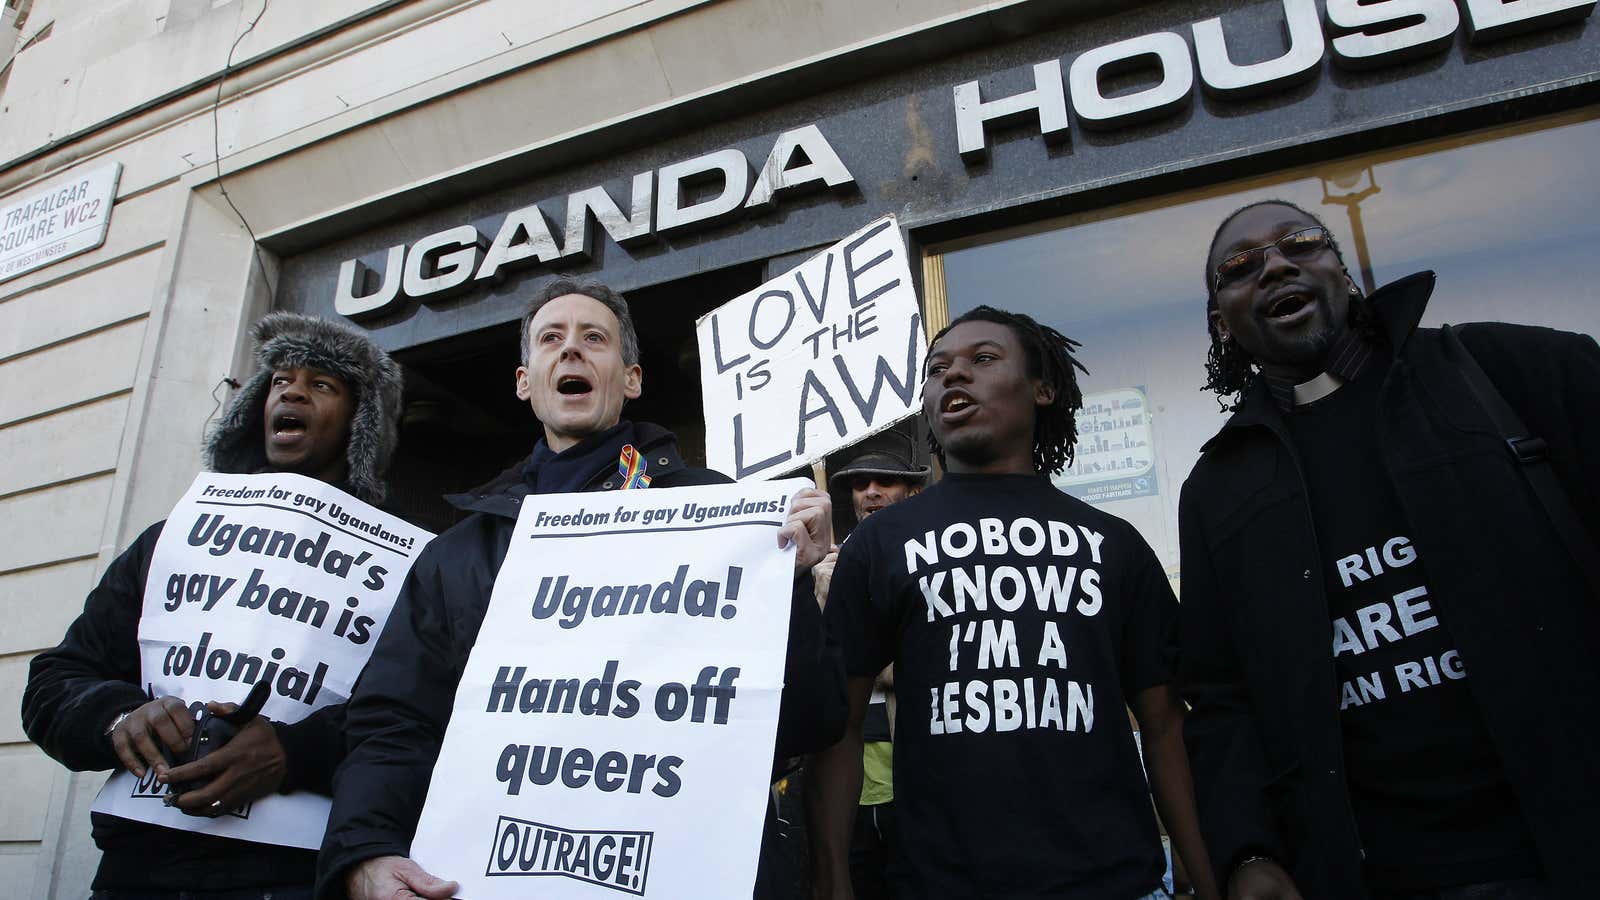 Despite vocal protests, LGBTs face discrimination in Uganda.